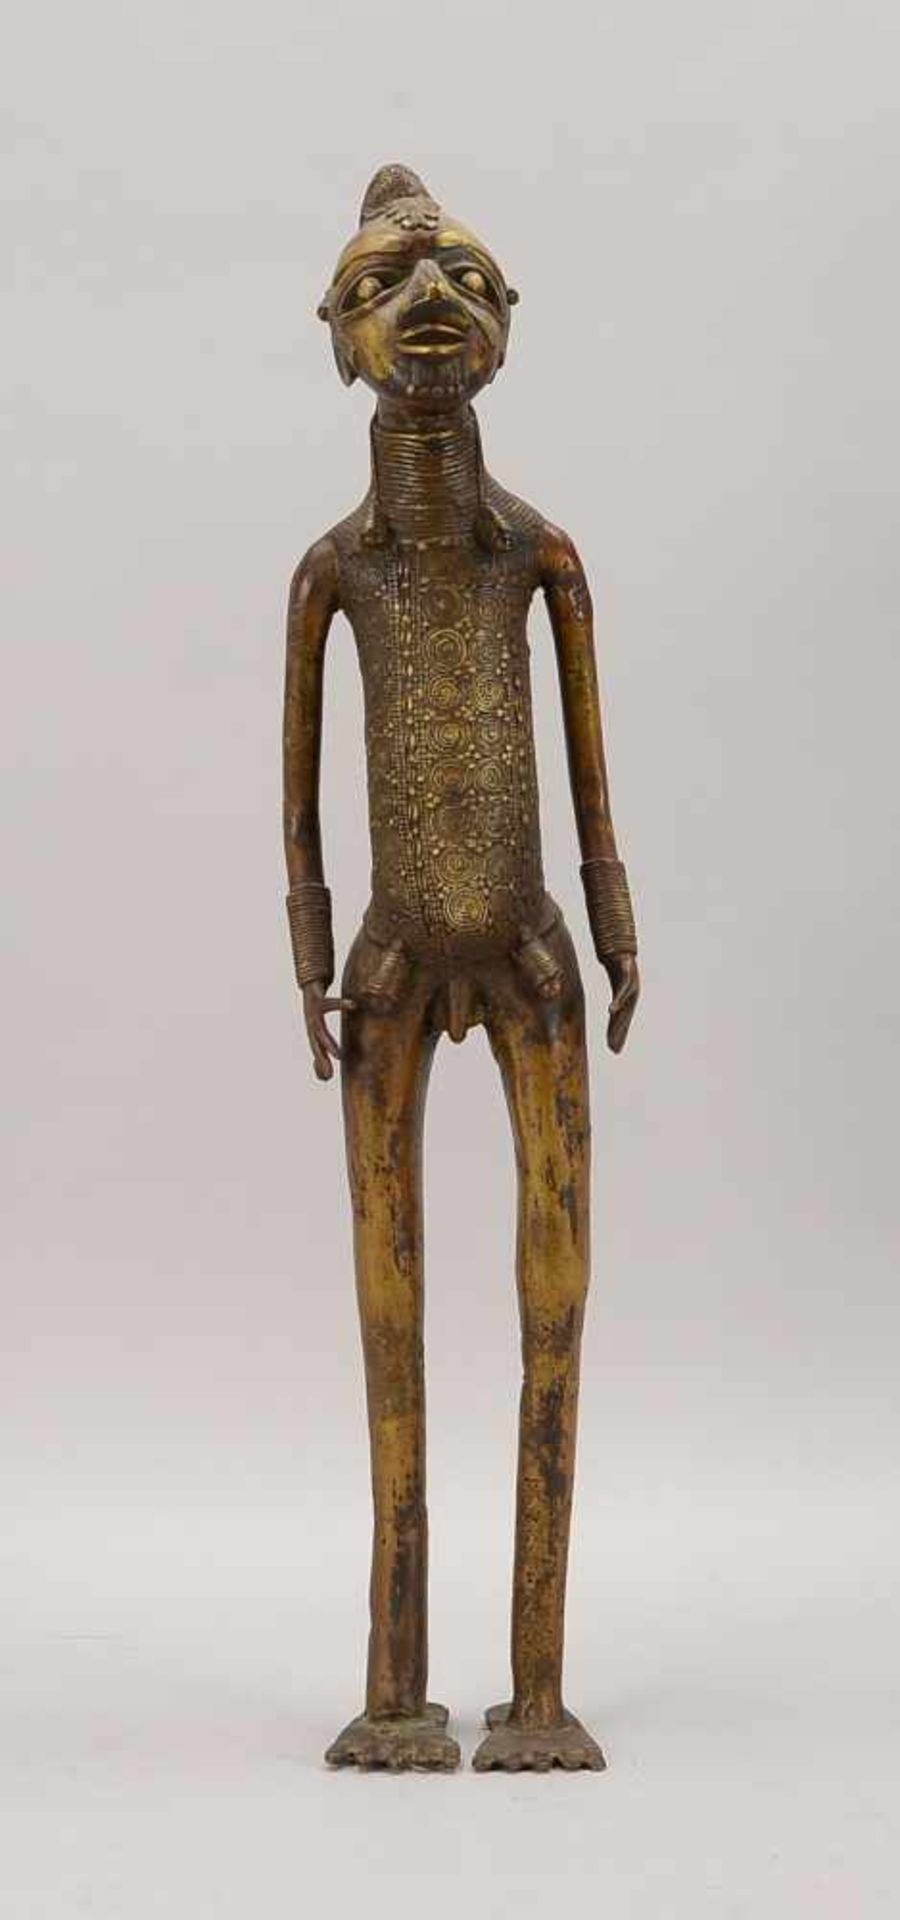 Große Bronzefigur, 'Bamileke' (Beine nicht ganz ausgegossen - vermutlich in verlorener Form